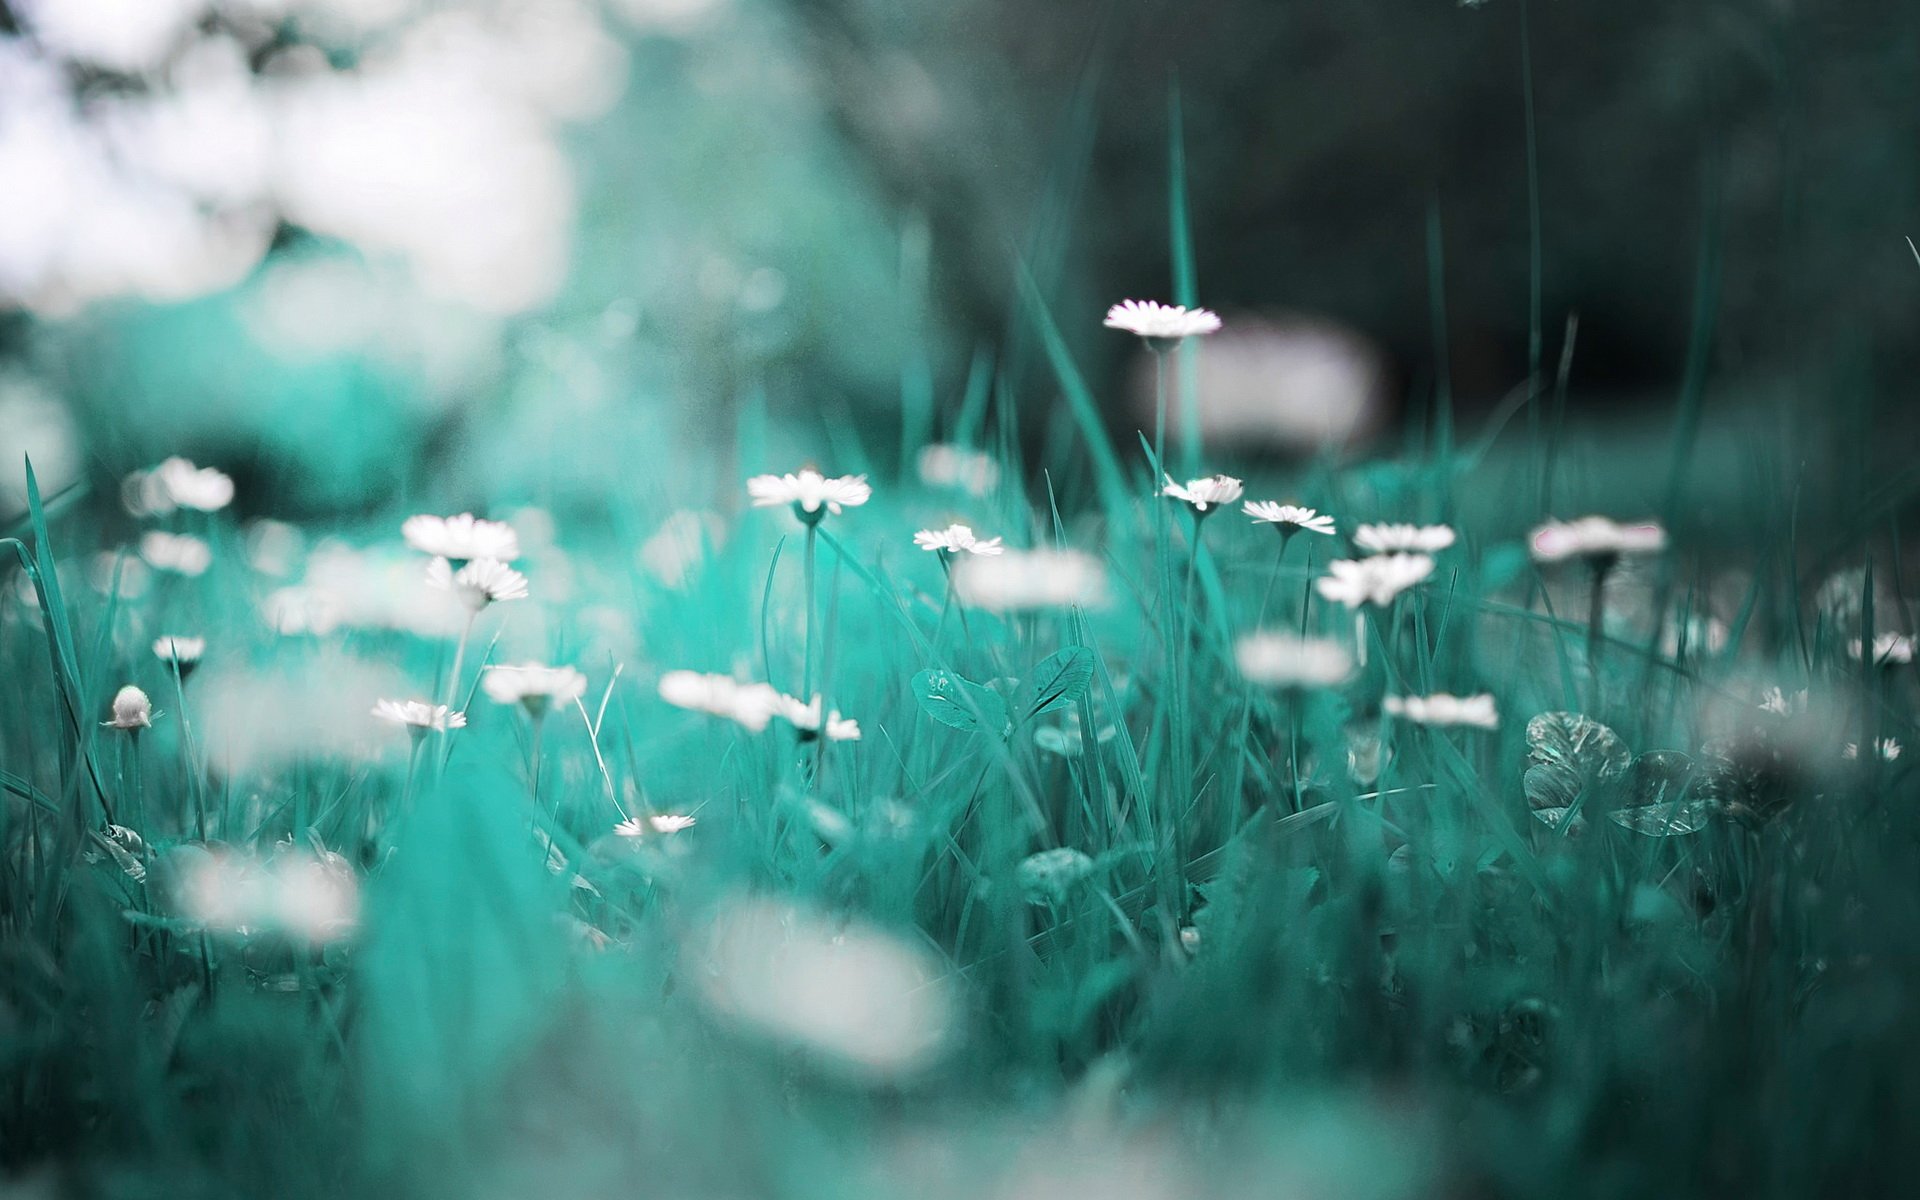 Hình nền Daisy HD Wallpaper với hoa cúc tươi sáng và đầy năng lượng chắc chắn sẽ làm tươi mới cho giao diện điện thoại của bạn. Xem ngay hình ảnh để khám phá vẻ đẹp đầy quyến rũ của hoa cúc!